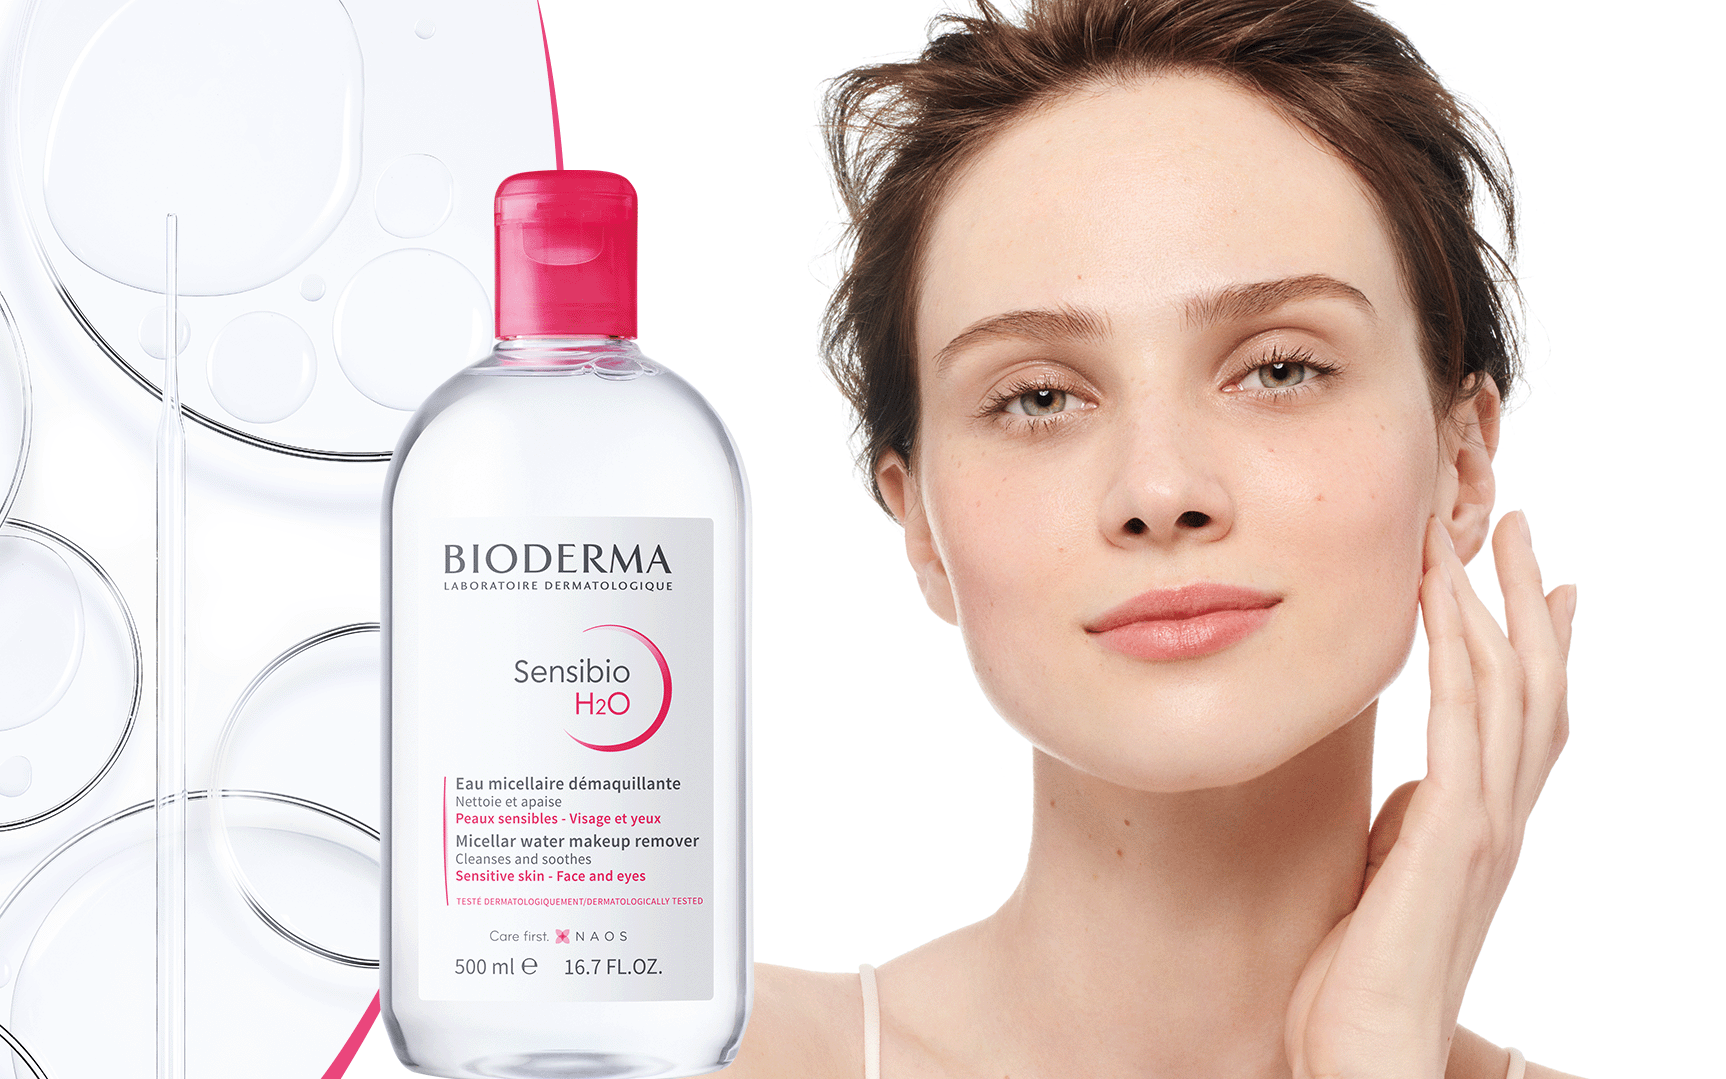 Skincare đúng cách với Bioderma Sensibio H2O, da nhạy cảm vẫn đẹp chuẩn an toàn, tự nhiên